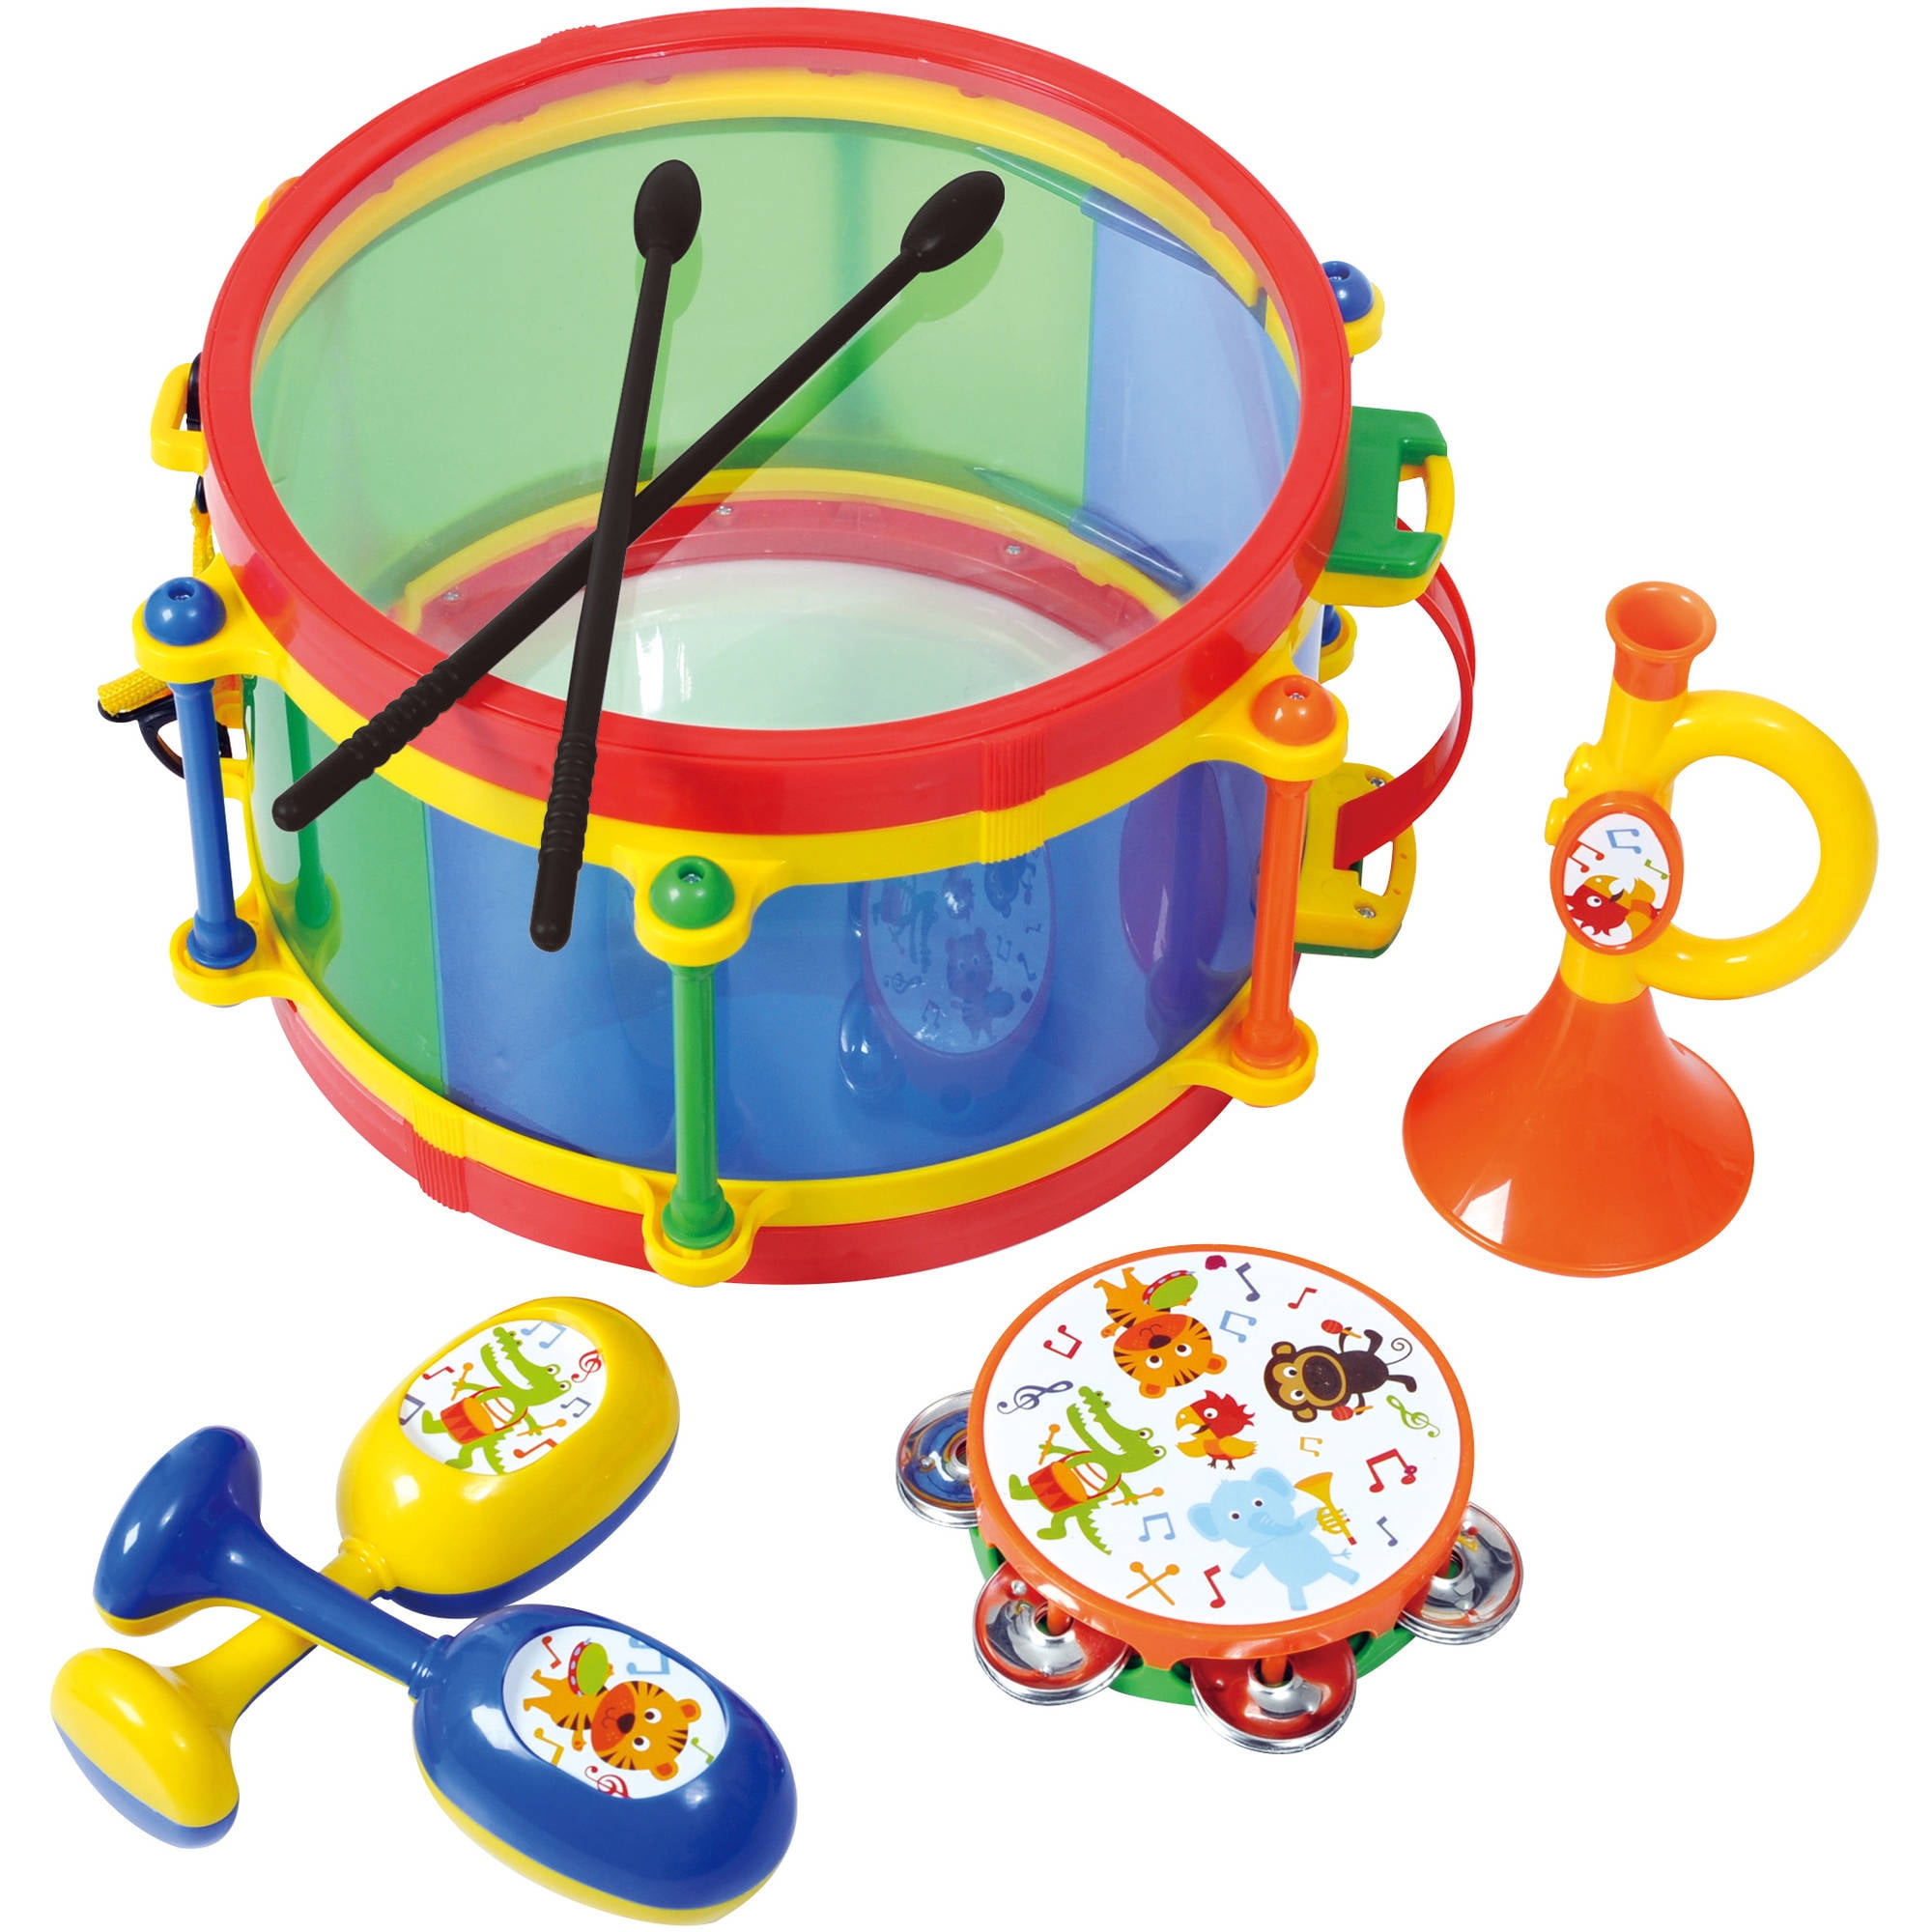 toy drum set walmart